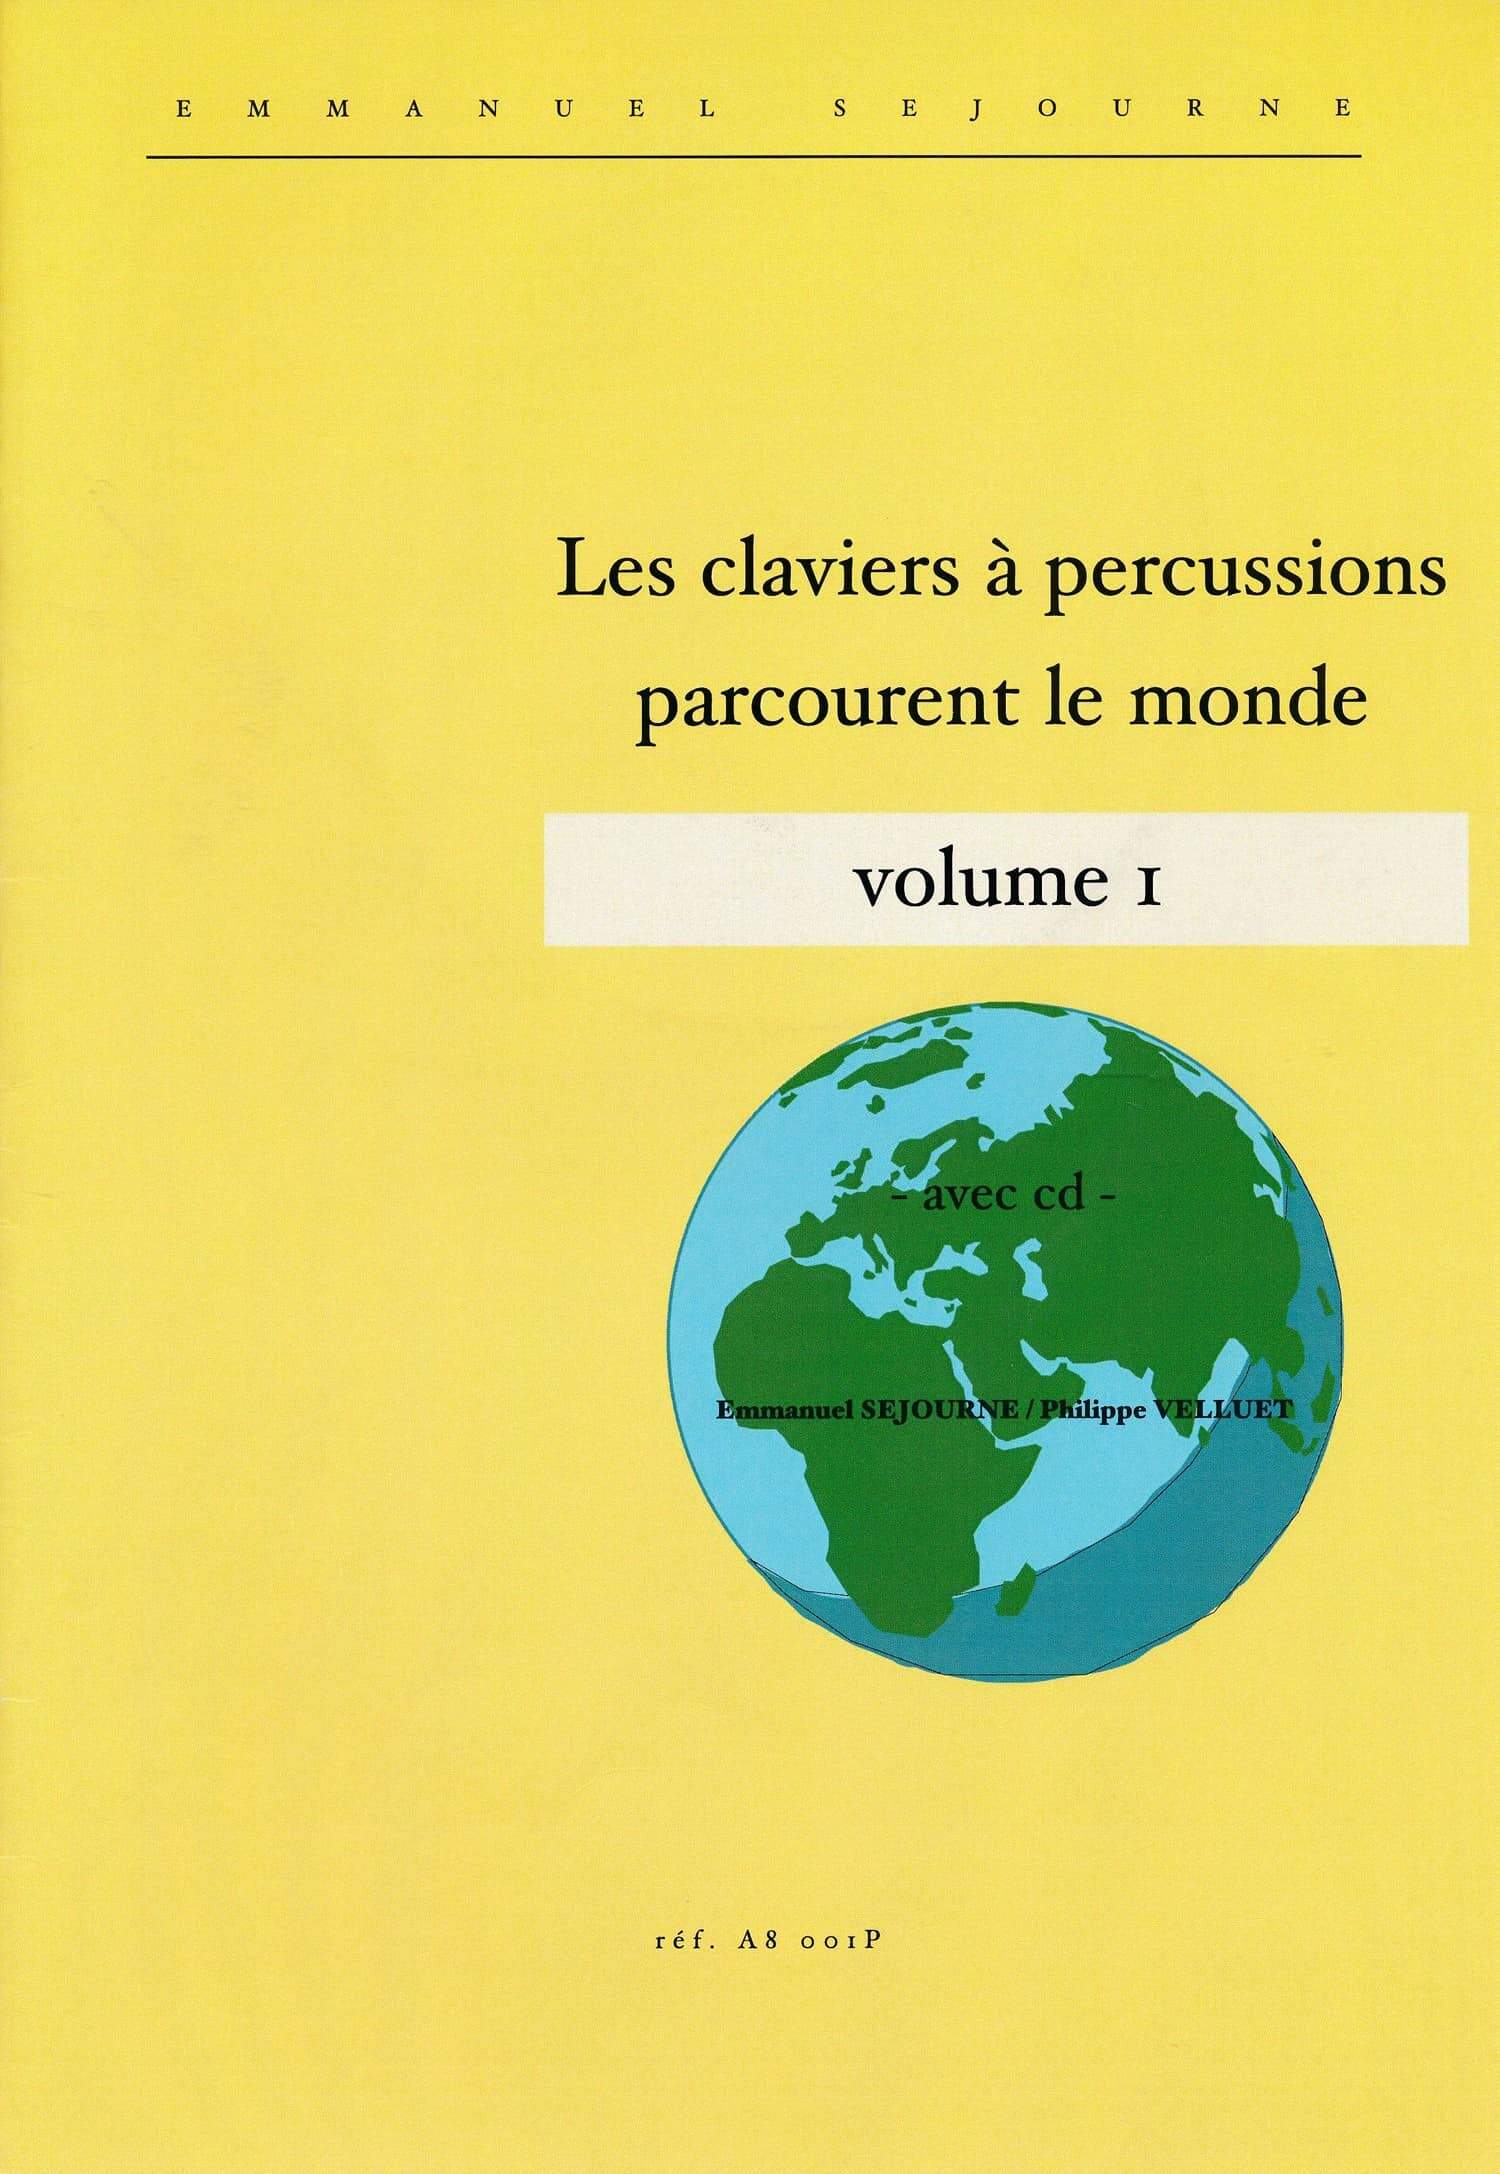 Les Claviers A Percussions Parcourent Le Monde, Volume 1 by Emmanuel Sejourne and Philippe Velluet